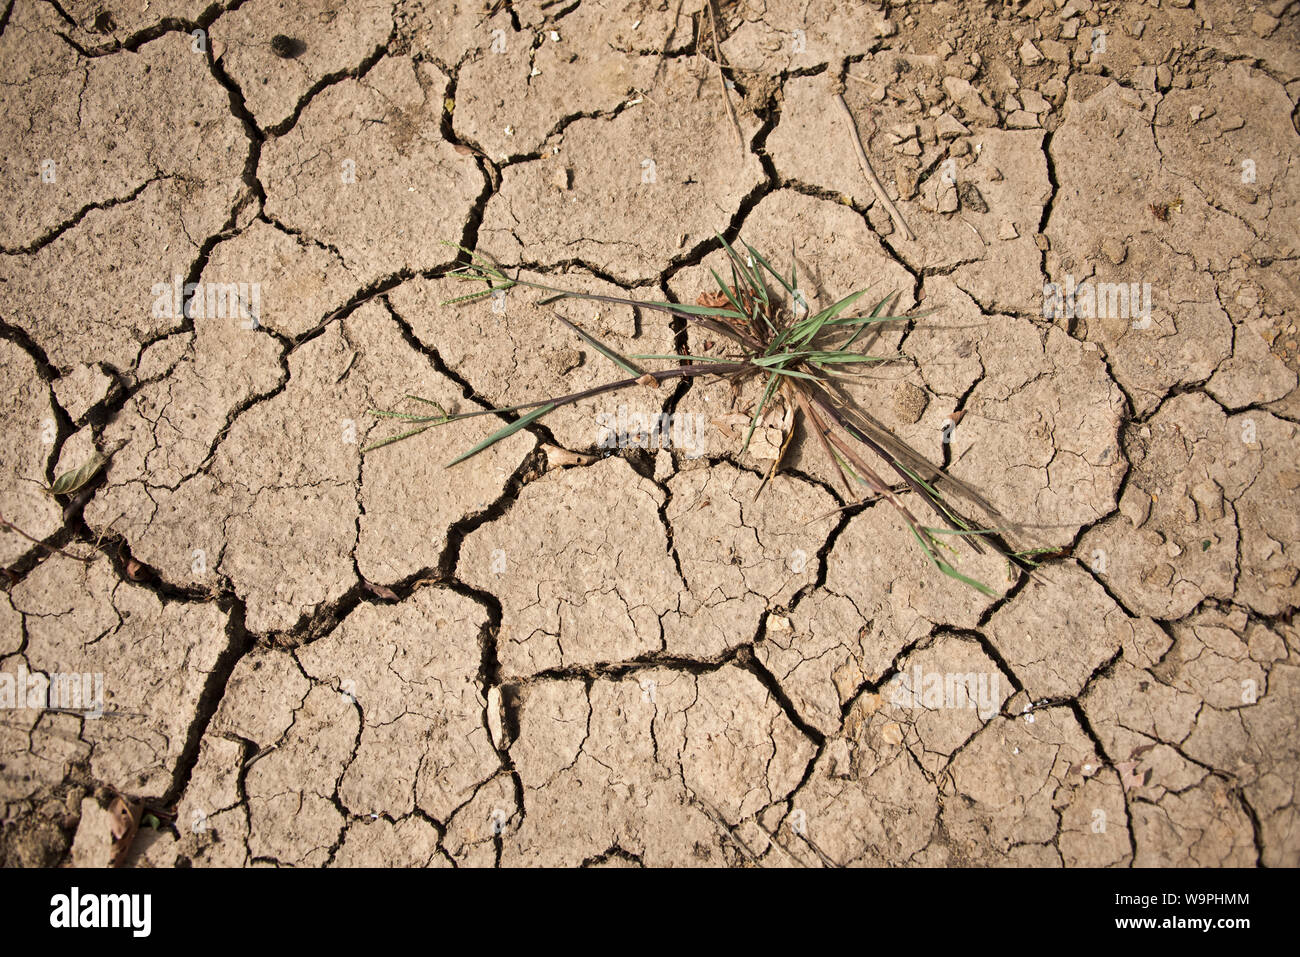 Cracked earth - le résultat de la sécheresse - dans la région du Sahara du Niger Banque D'Images